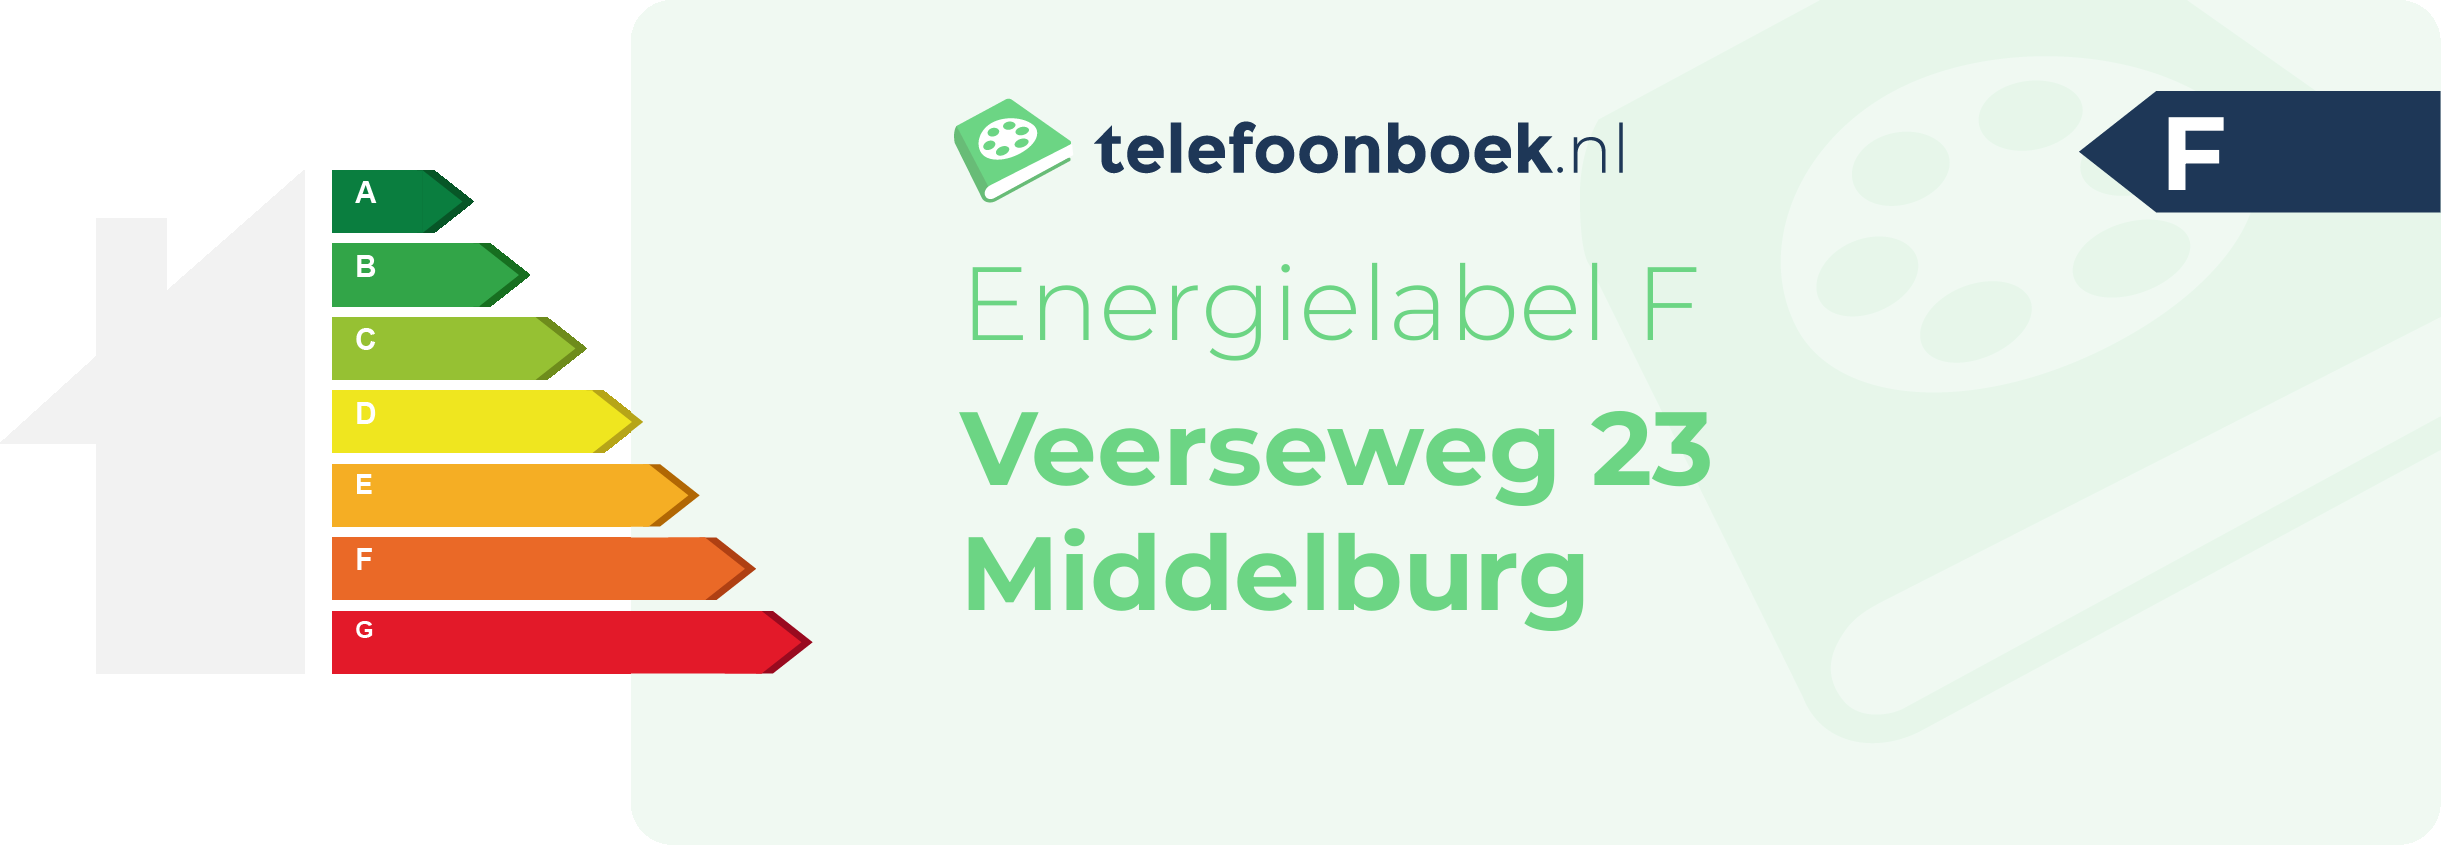 Energielabel Veerseweg 23 Middelburg